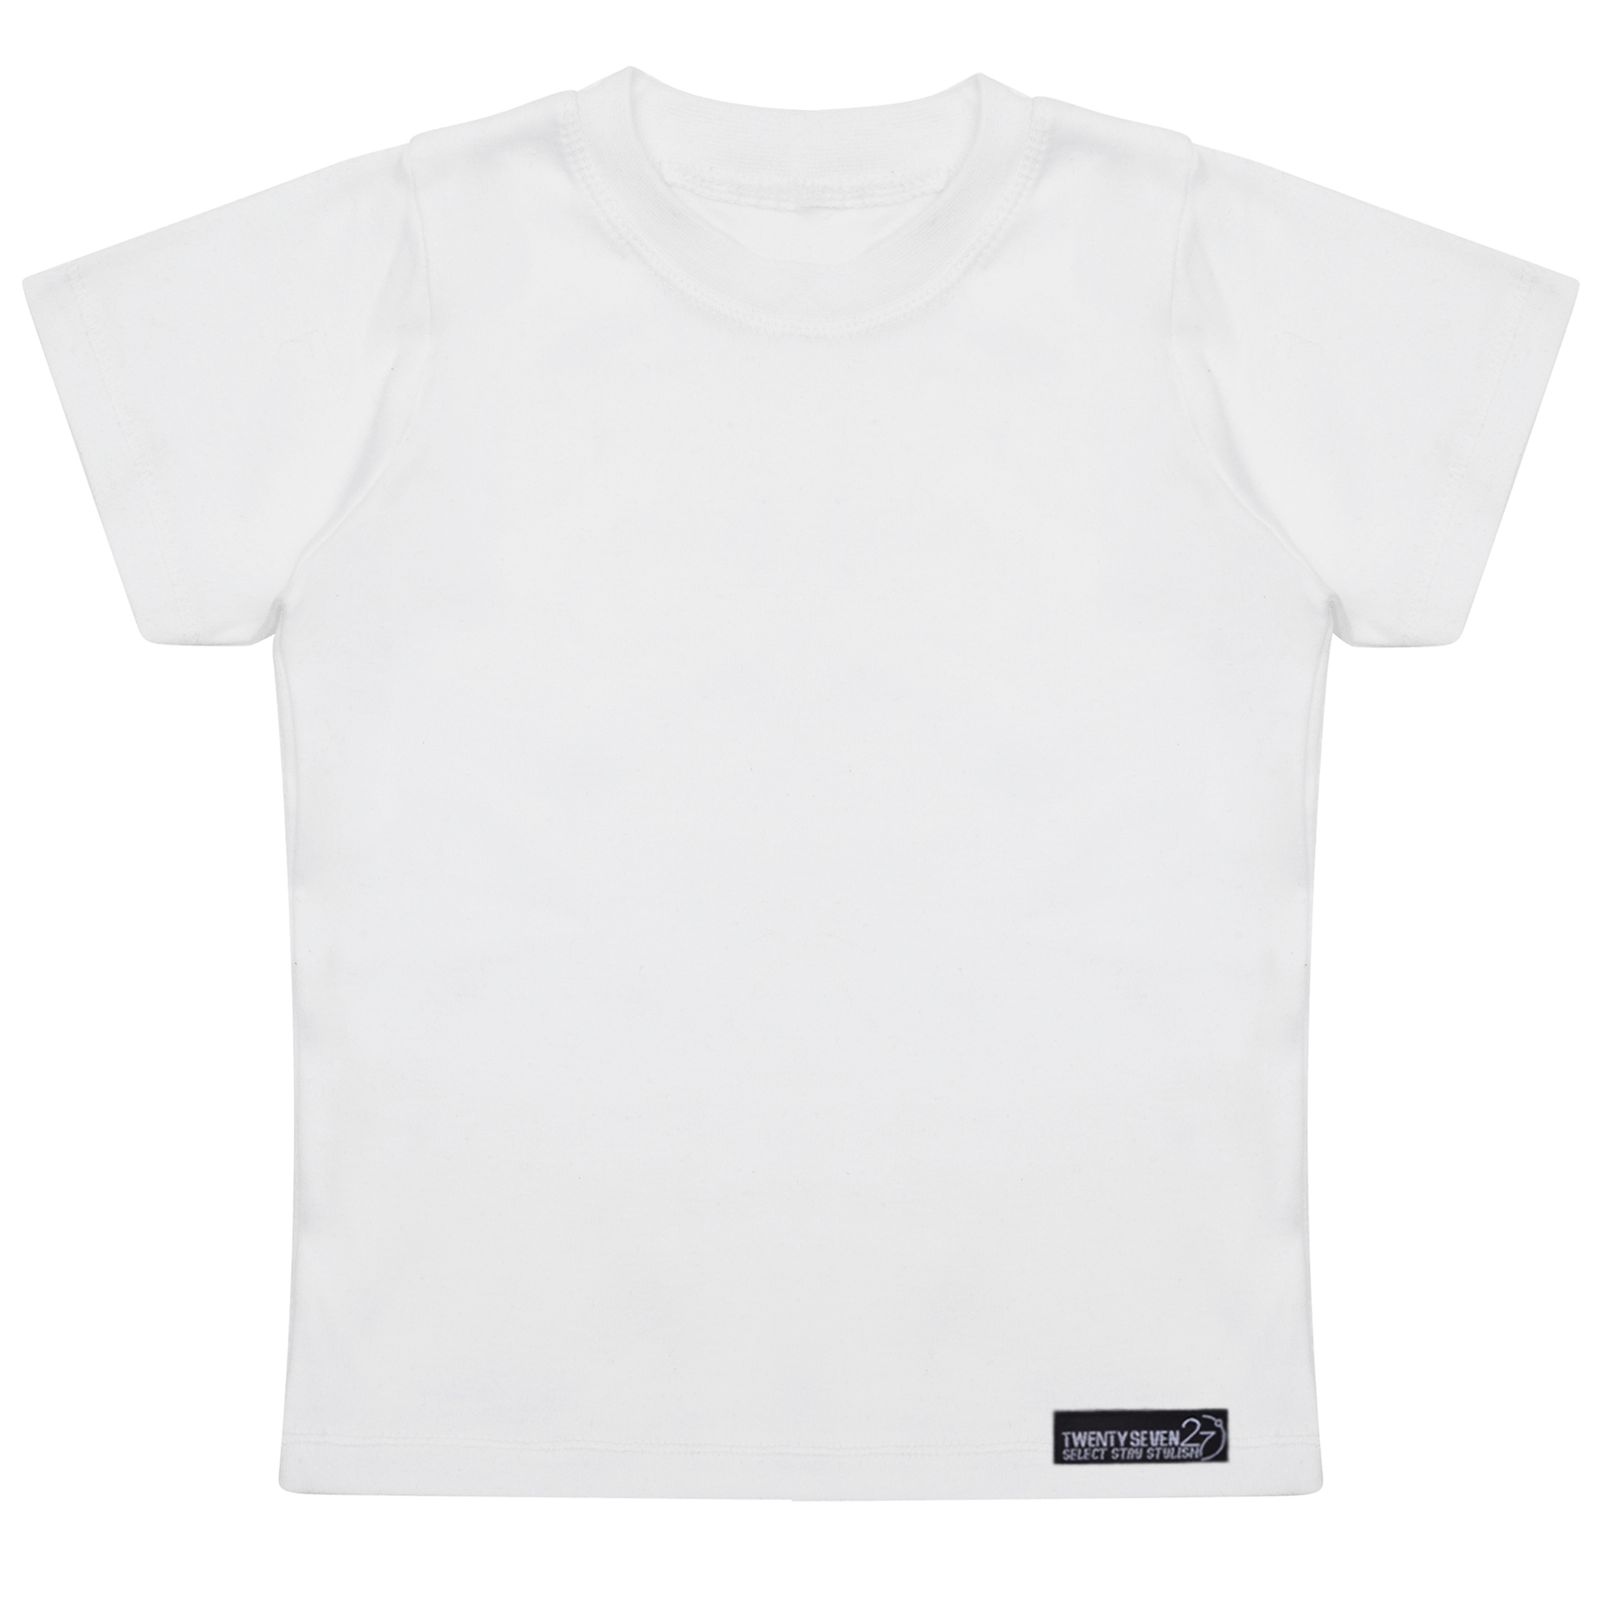 تی شرت آستین کوتاه دخترانه 27 مدل Tshirt White kids Simple کد MH1449 -  - 1